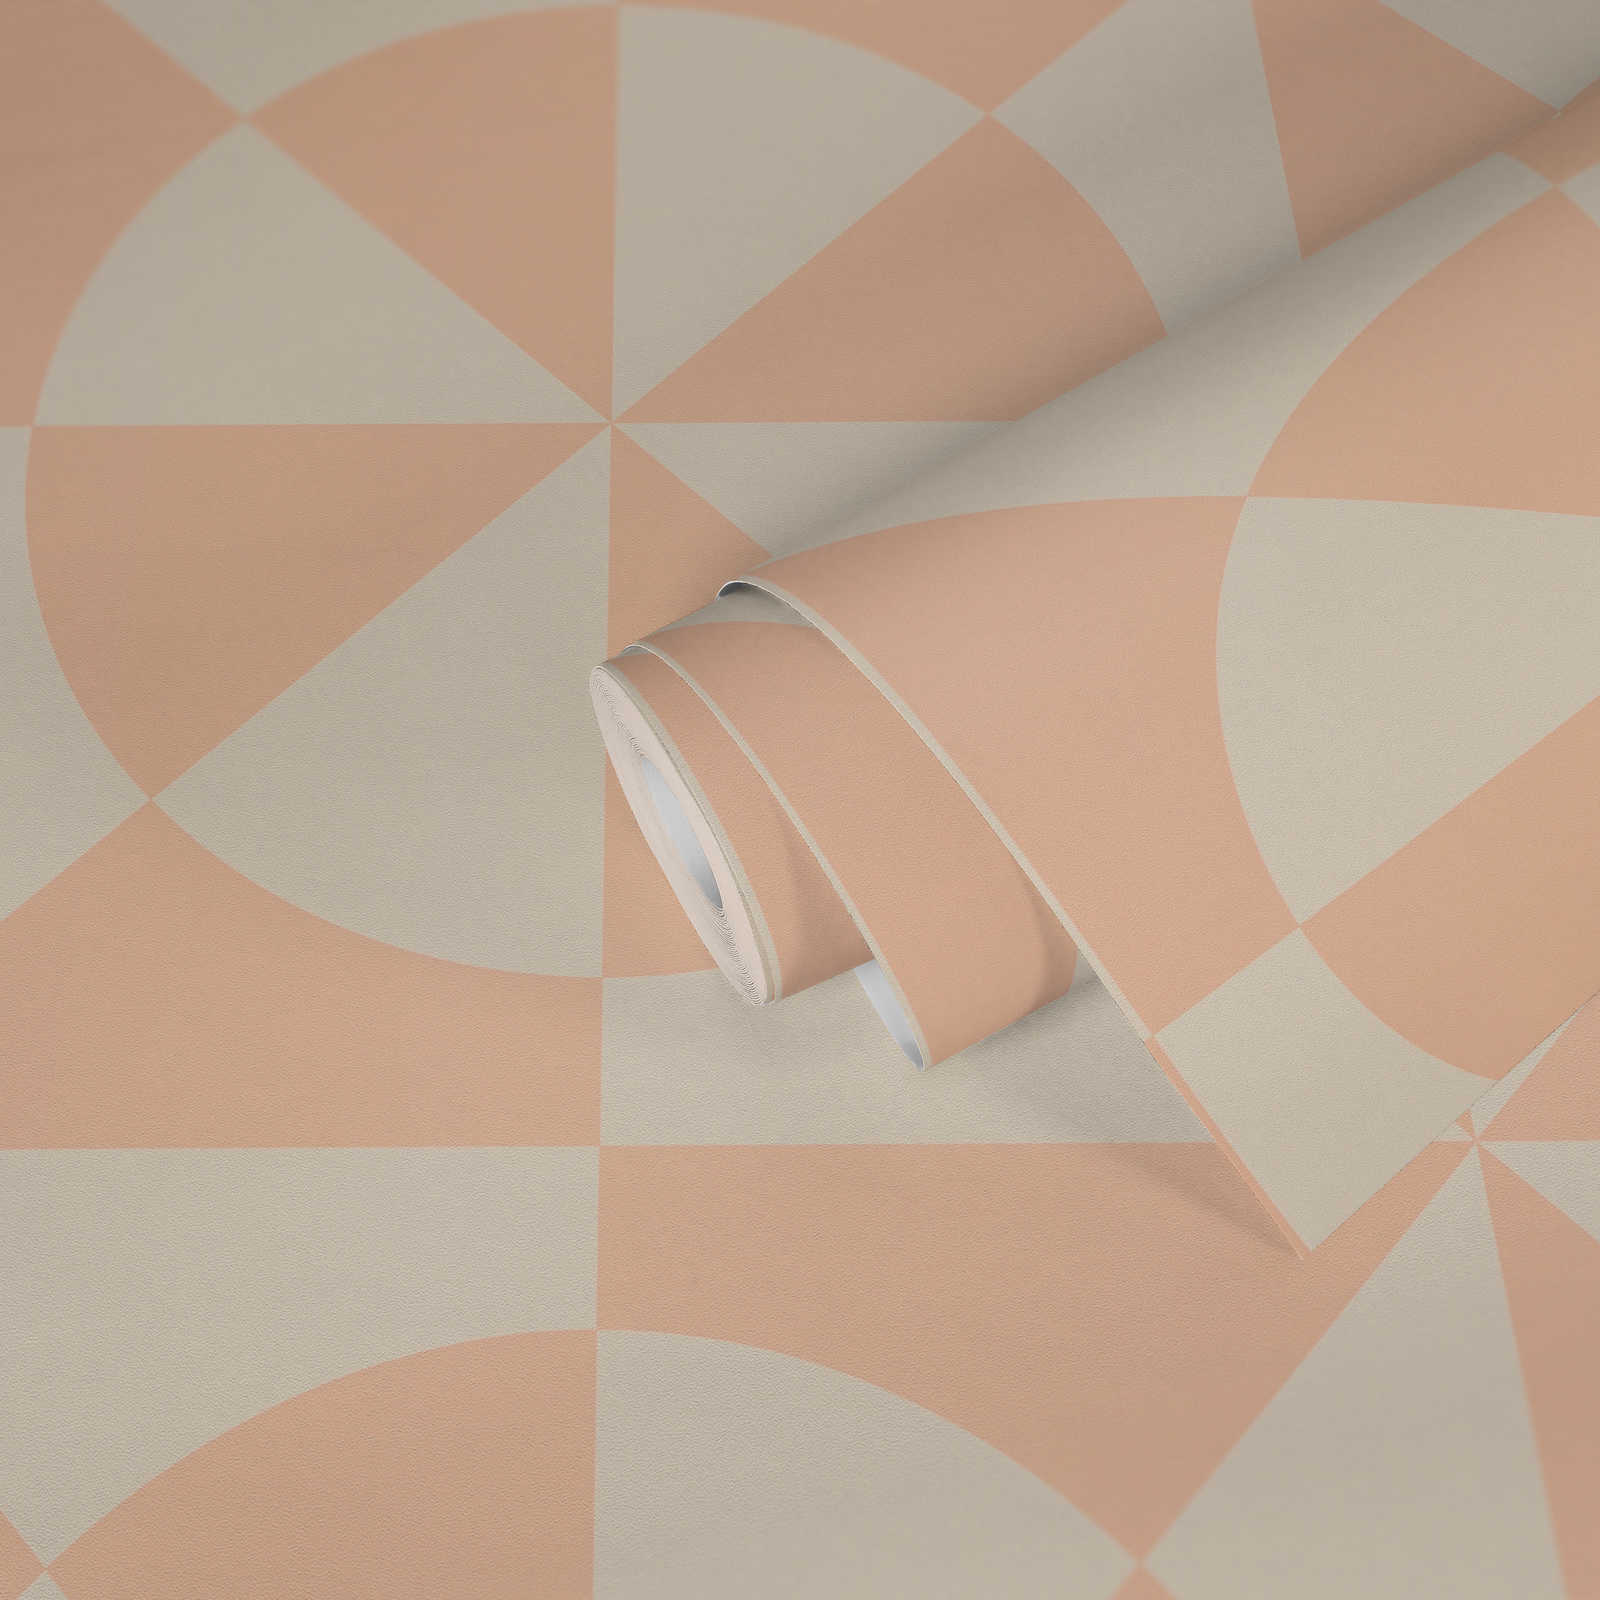             Papel pintado no tejido gráfico con triángulos y círculos - crema, rosa
        